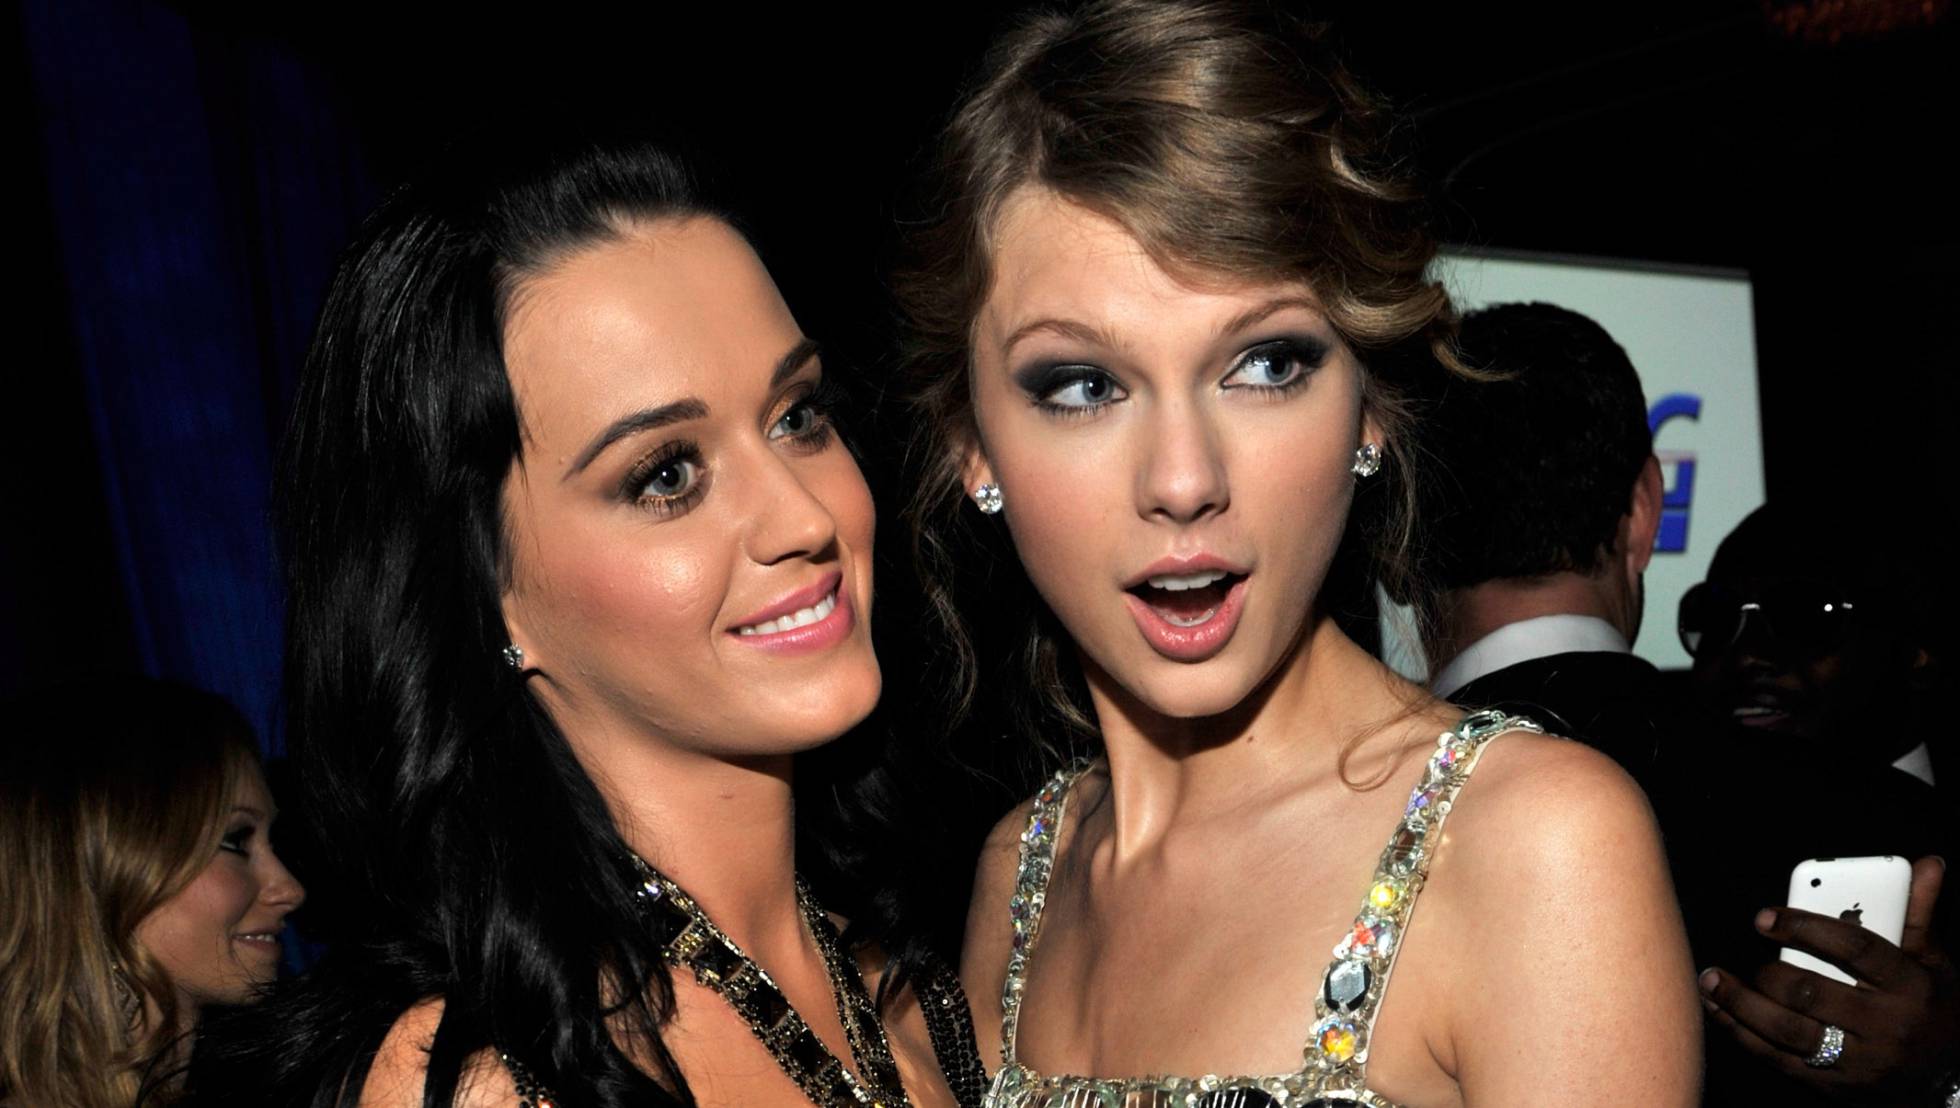 Con cookies de por medio, Katy Perry y Taylor Swift se reconcilian